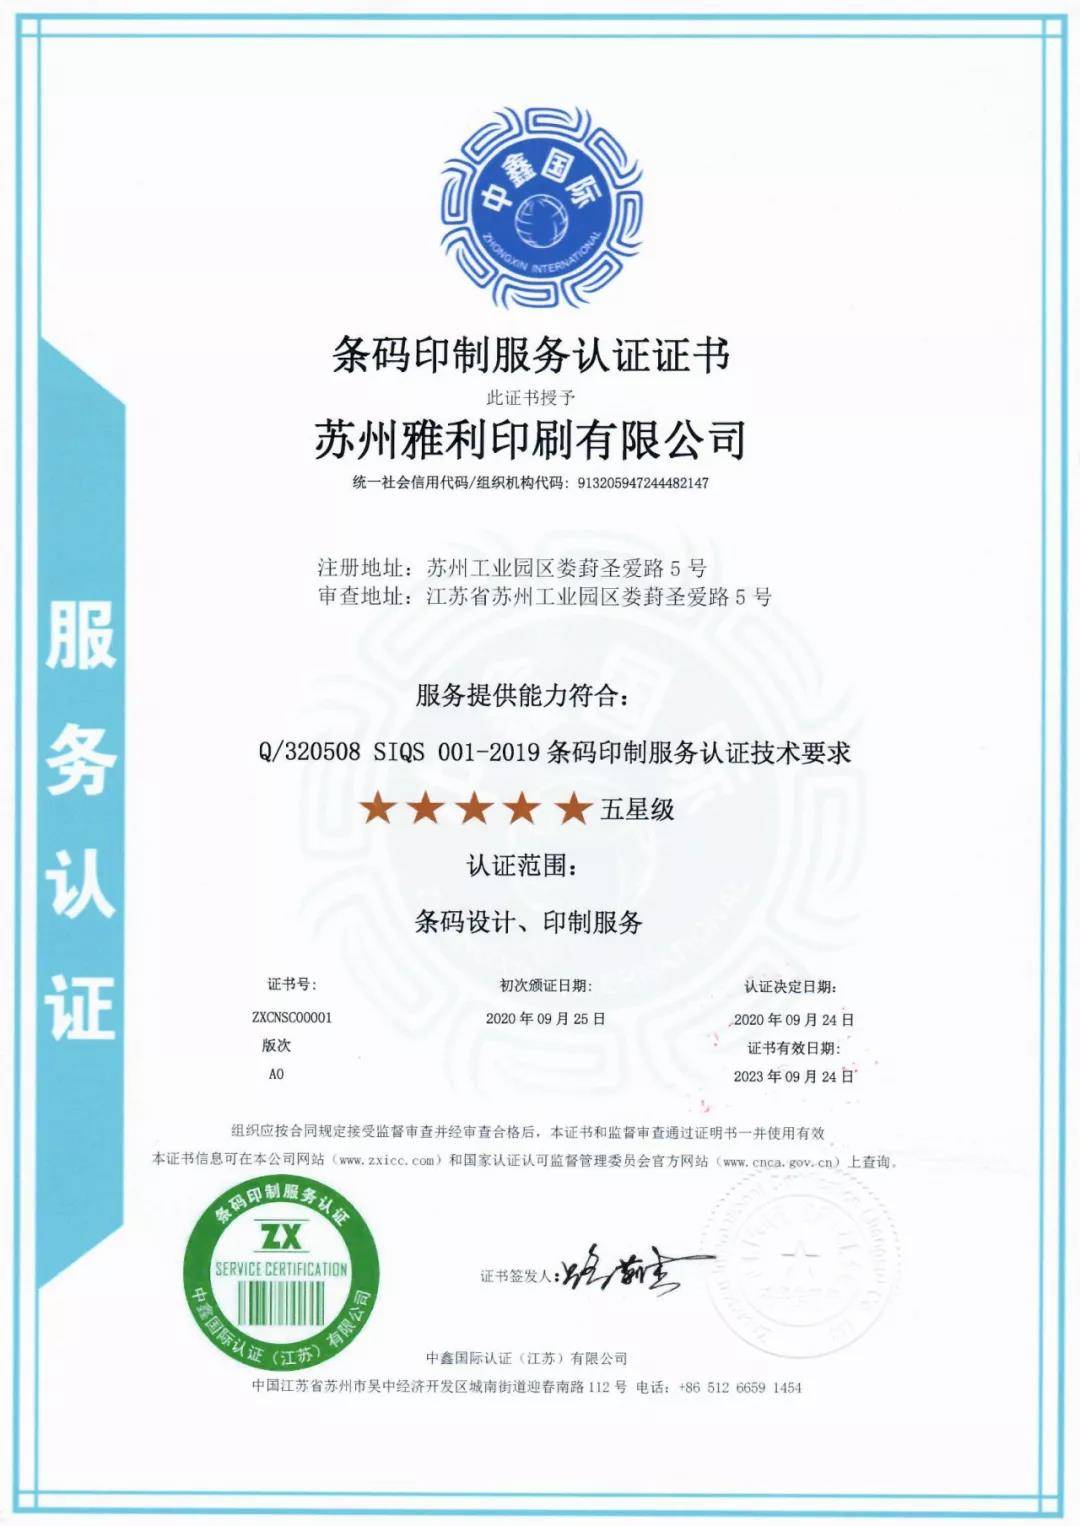 苏州发放全国首张印刷服务认证证书